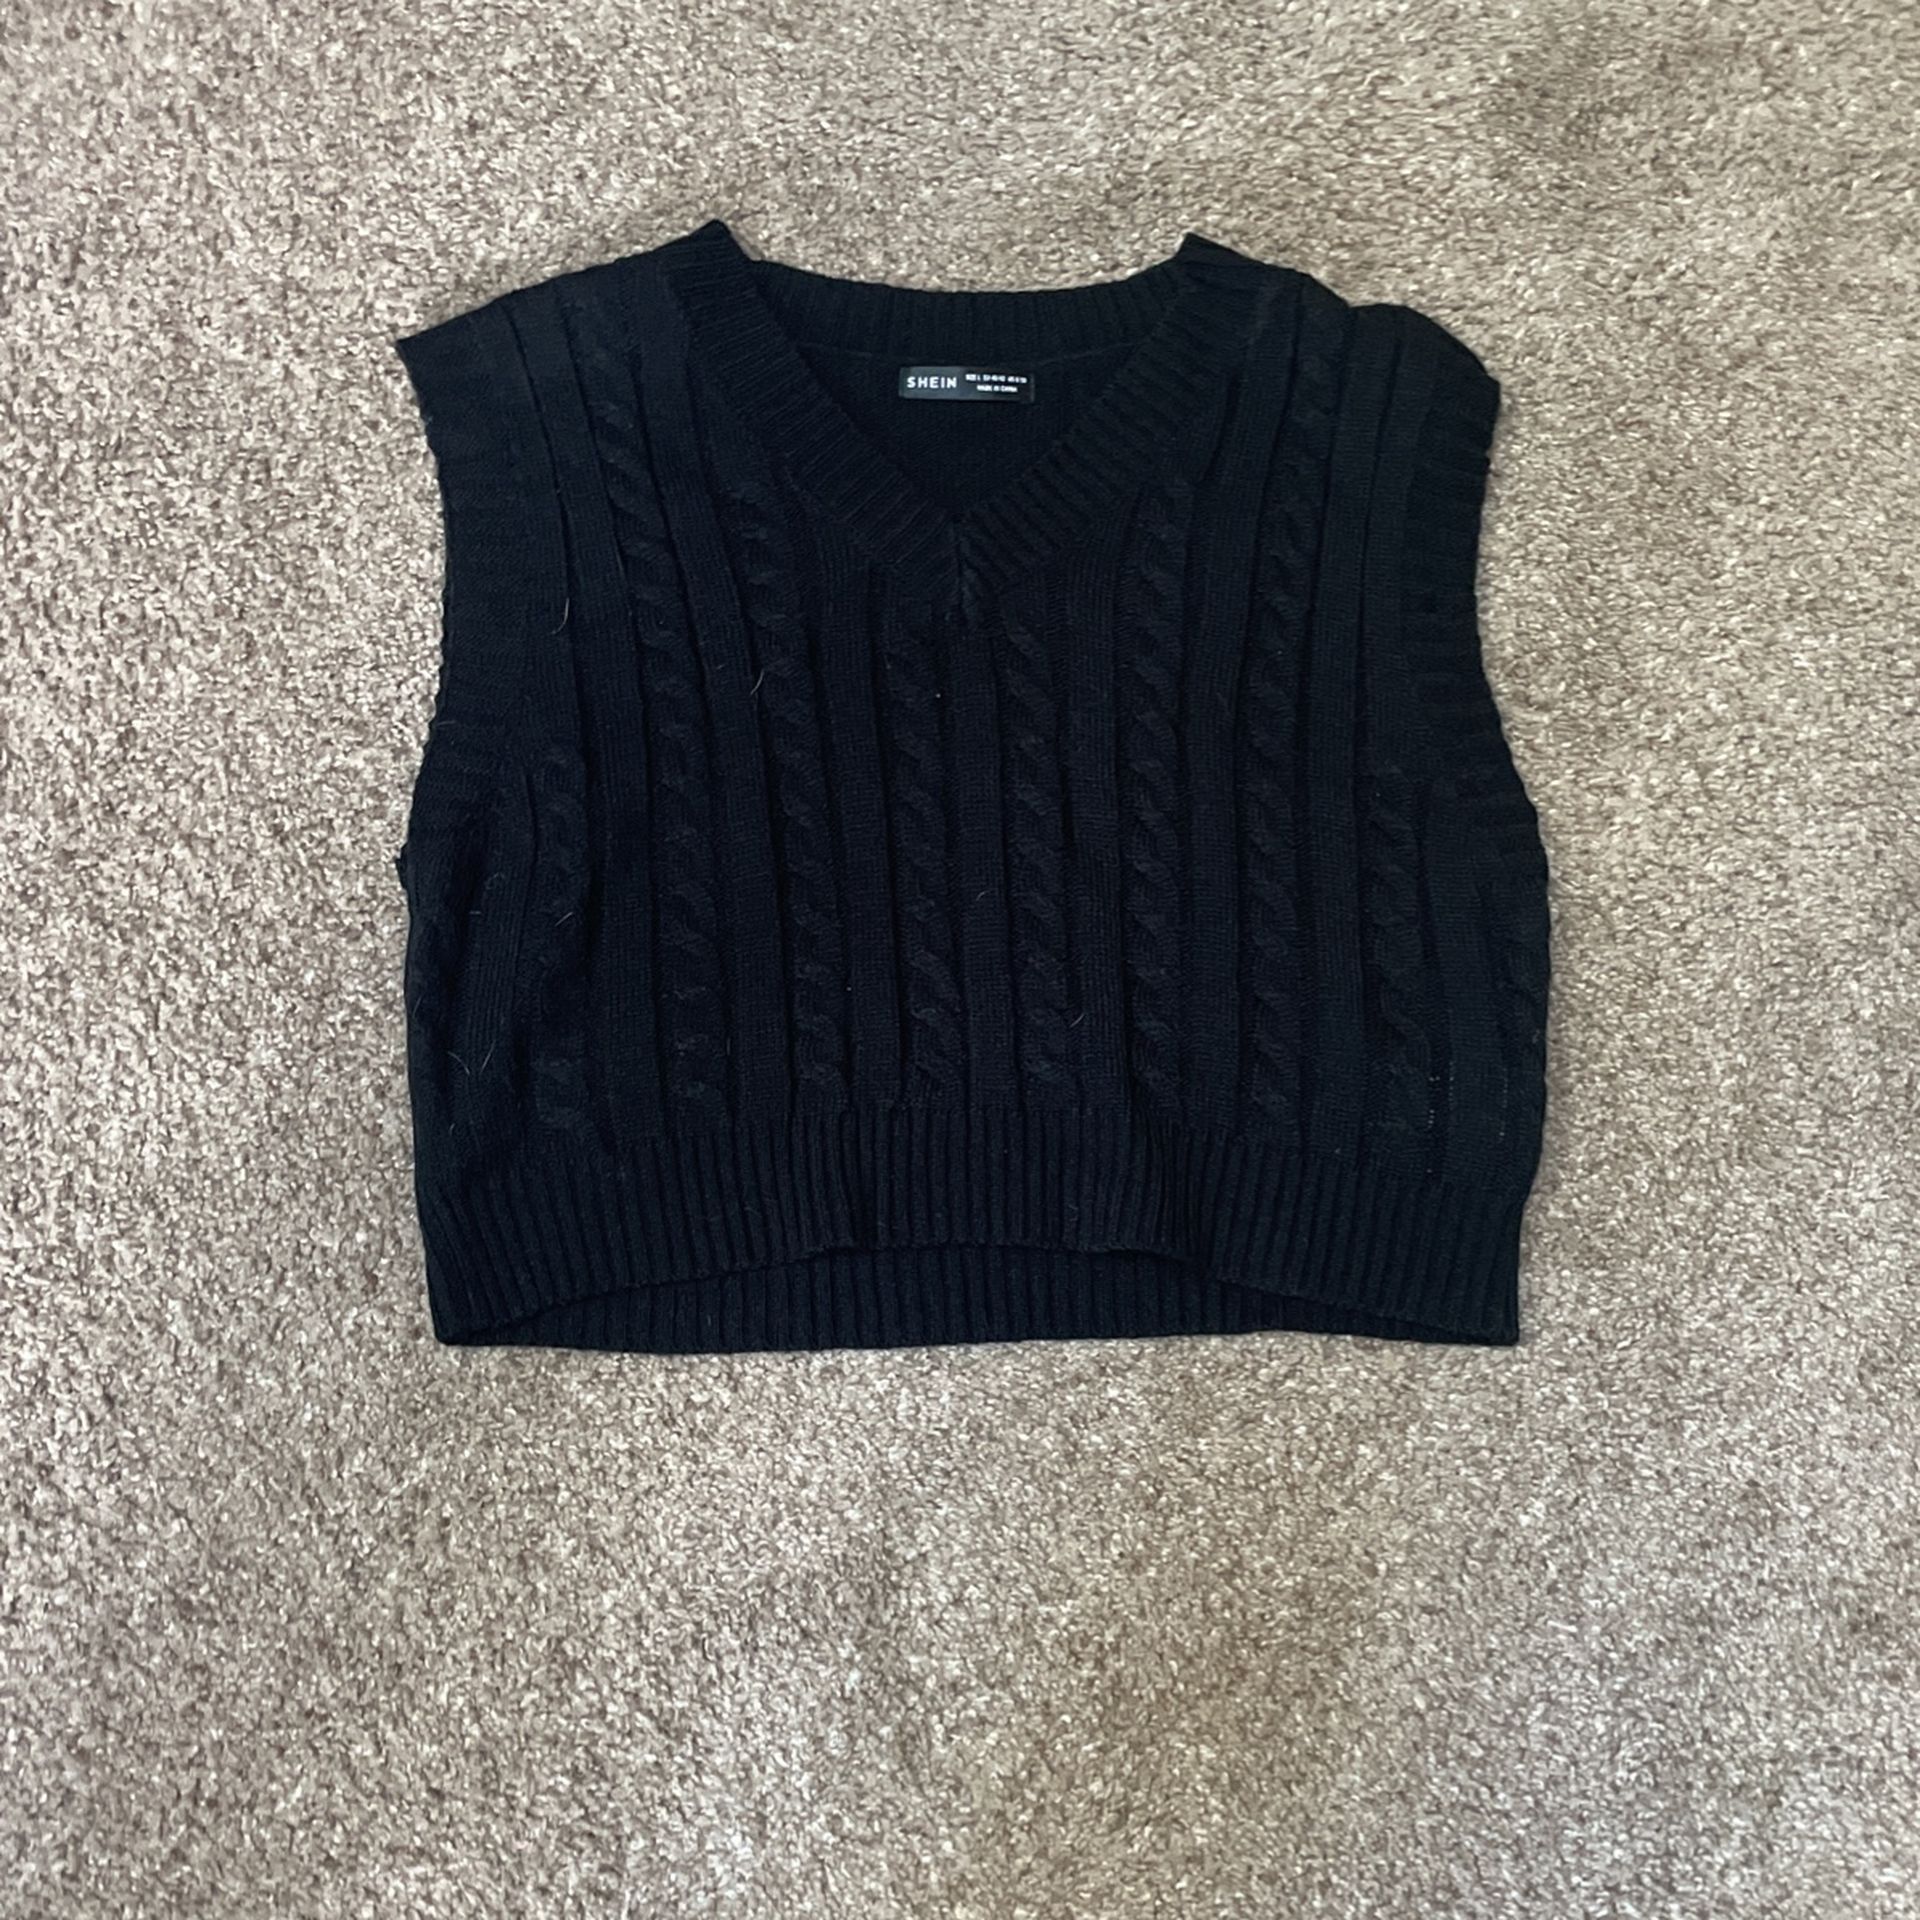 Women’s V-neck sweater vest 